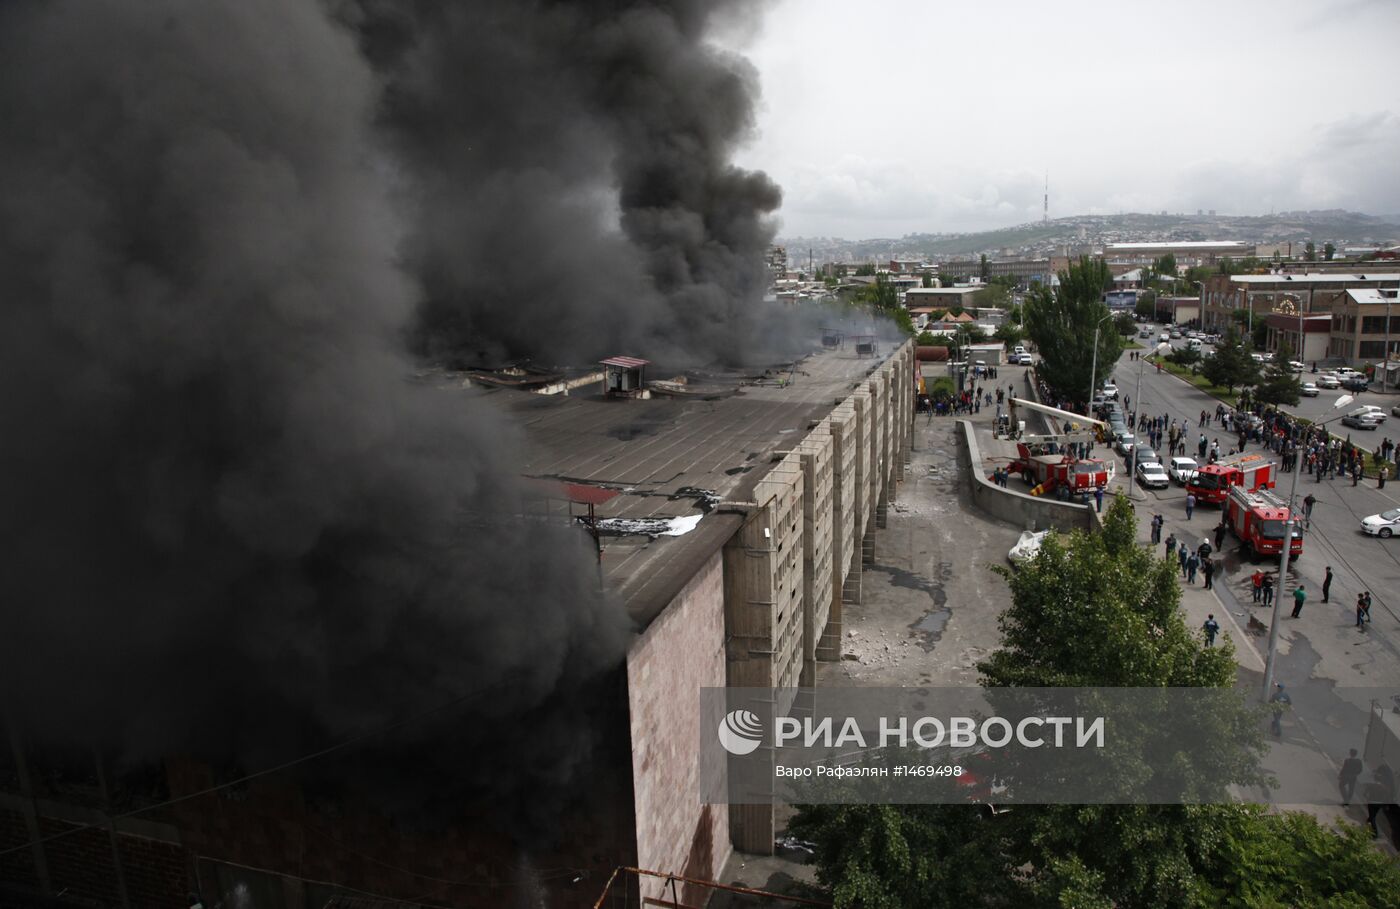 Пожар на складе компании "Спайка" в Ереване